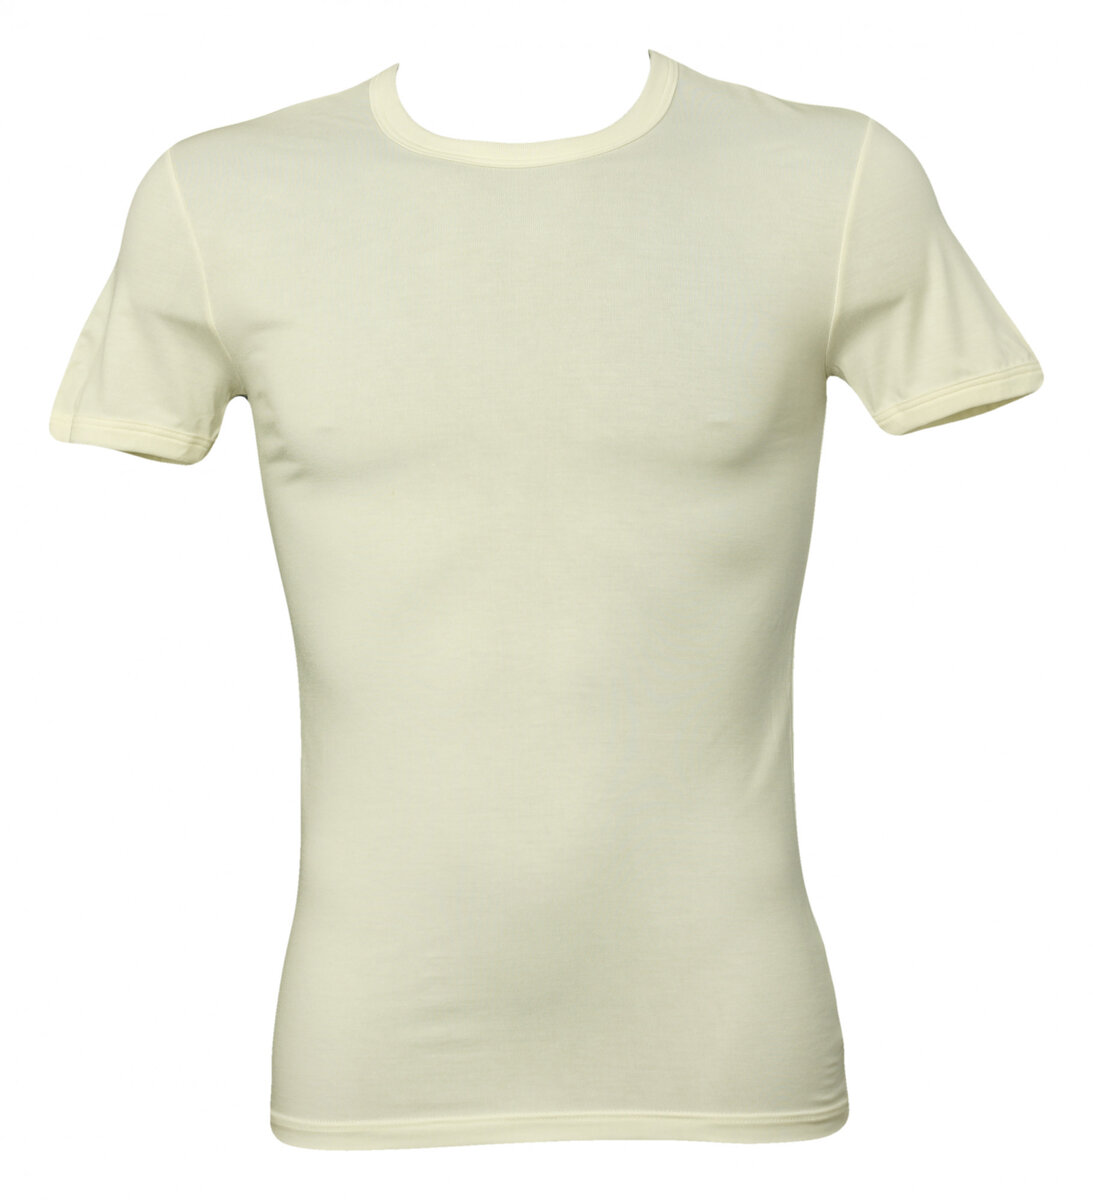 Pánské tričko Dolce Gabbana, vanilka S i10_P24211_1:323_2:92_